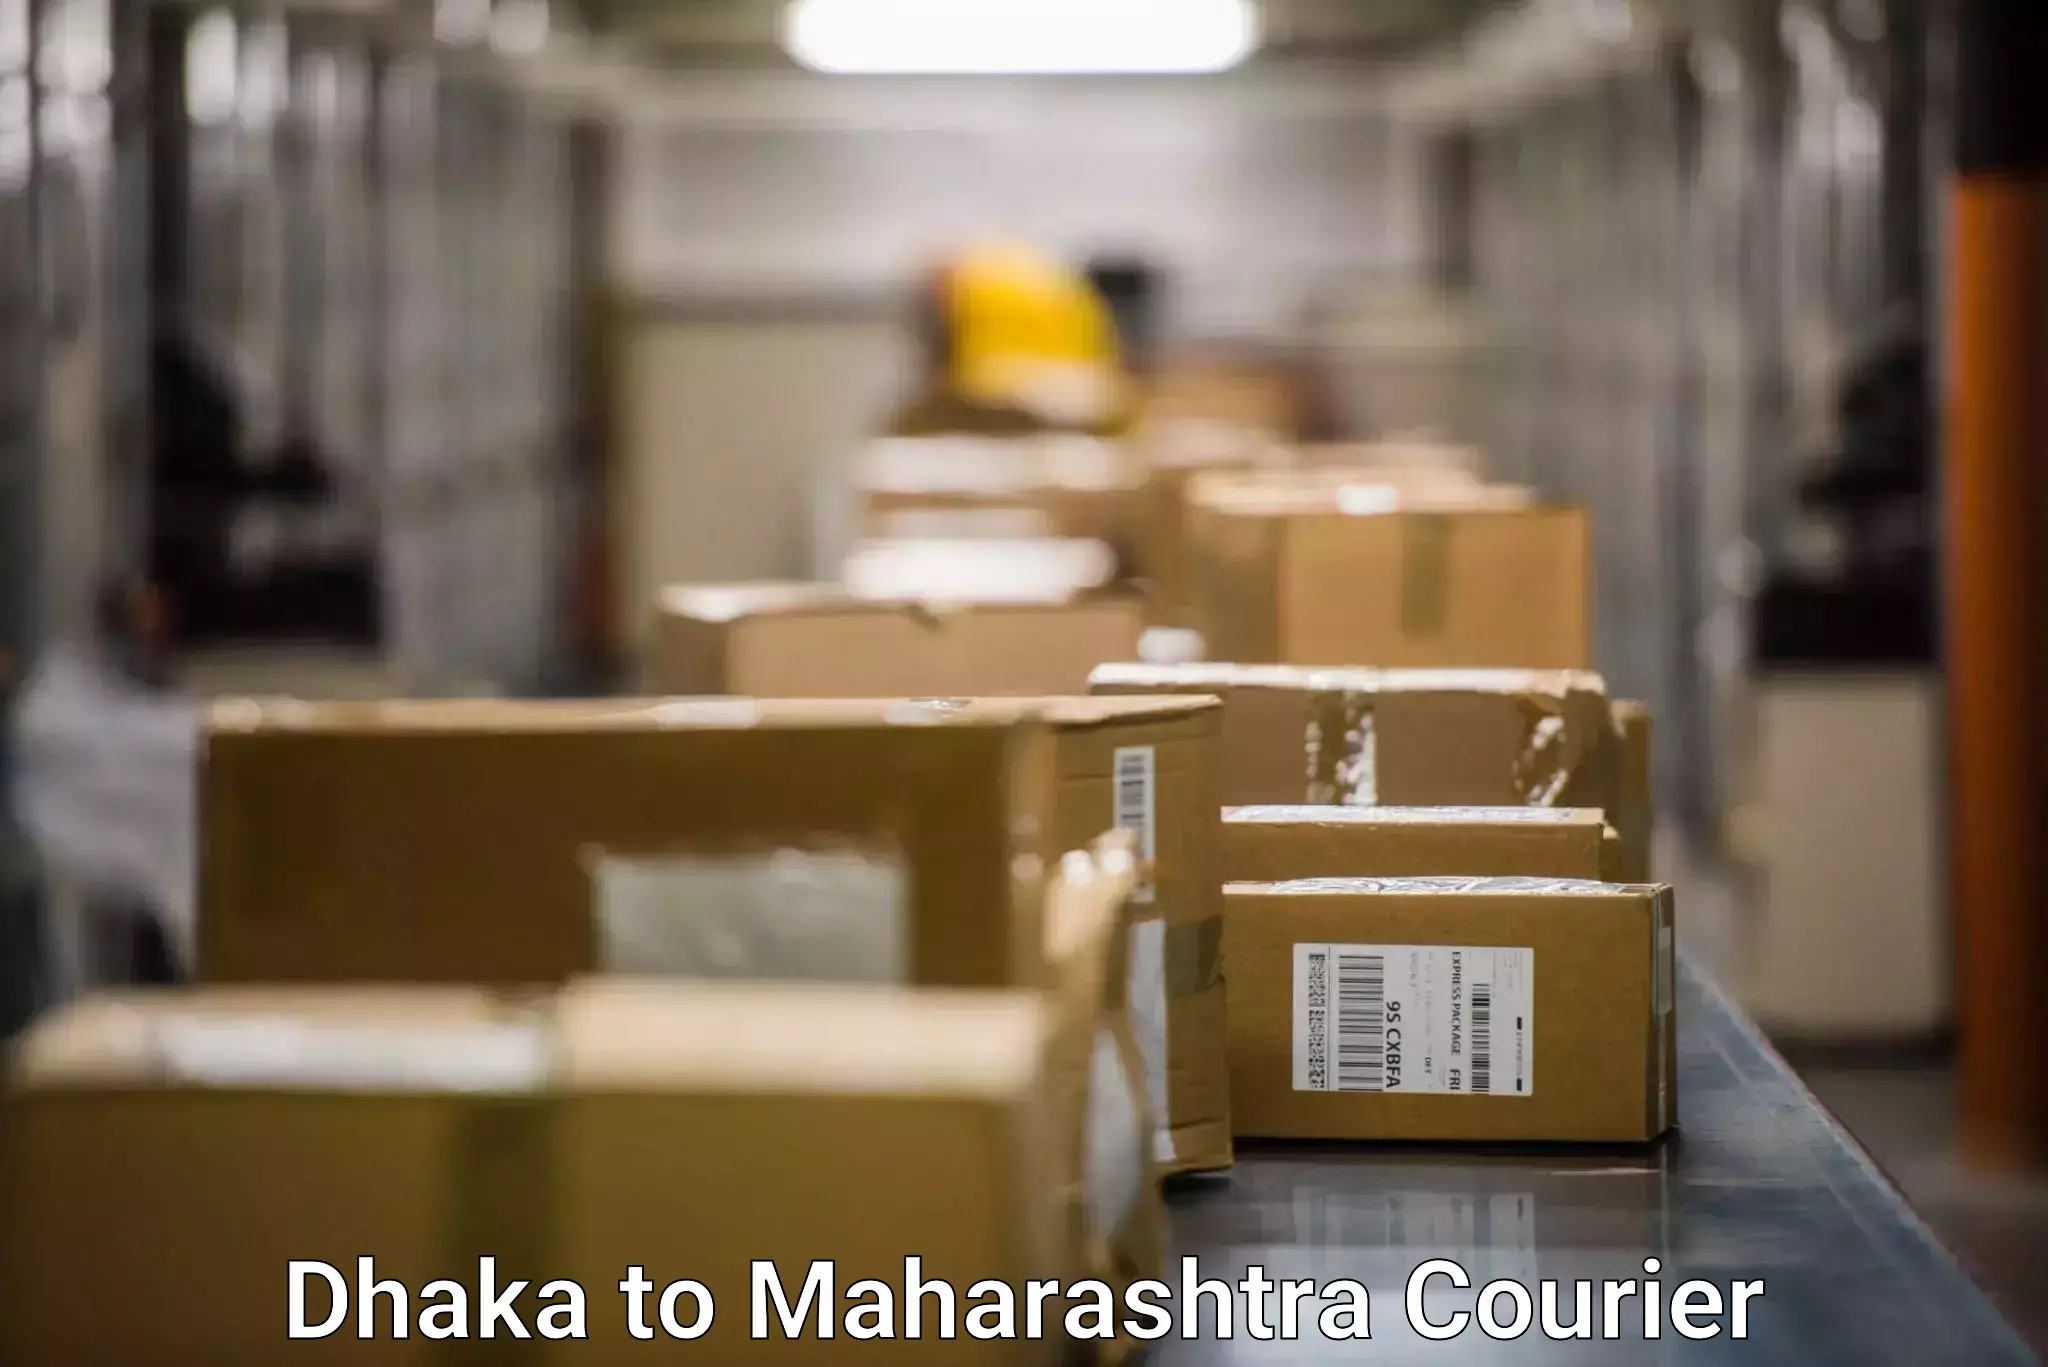 Courier service partnerships Dhaka to Raigarh Maharashtra